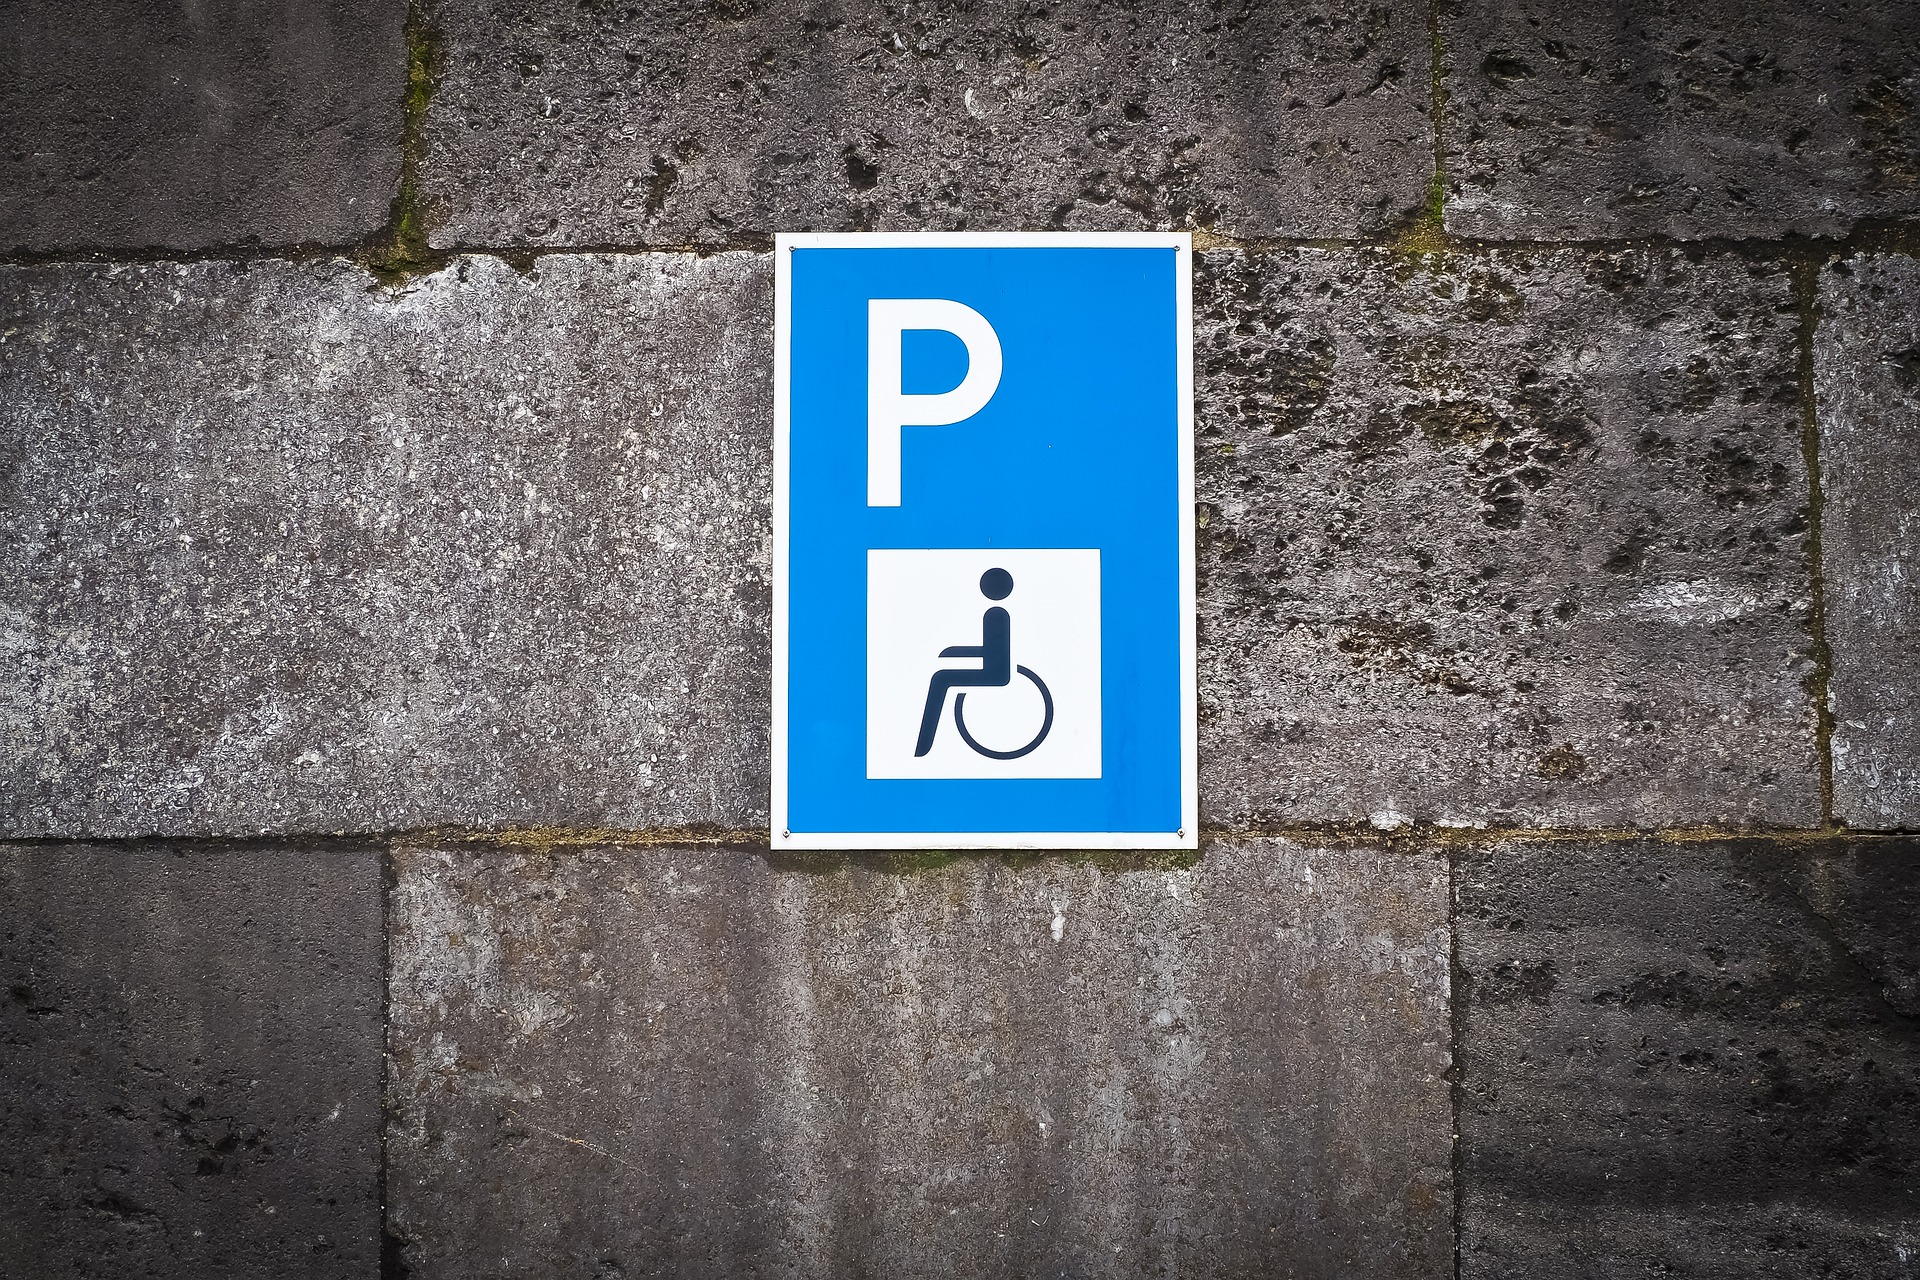 Ein Schild weist einen Behindertenparkplatz aus